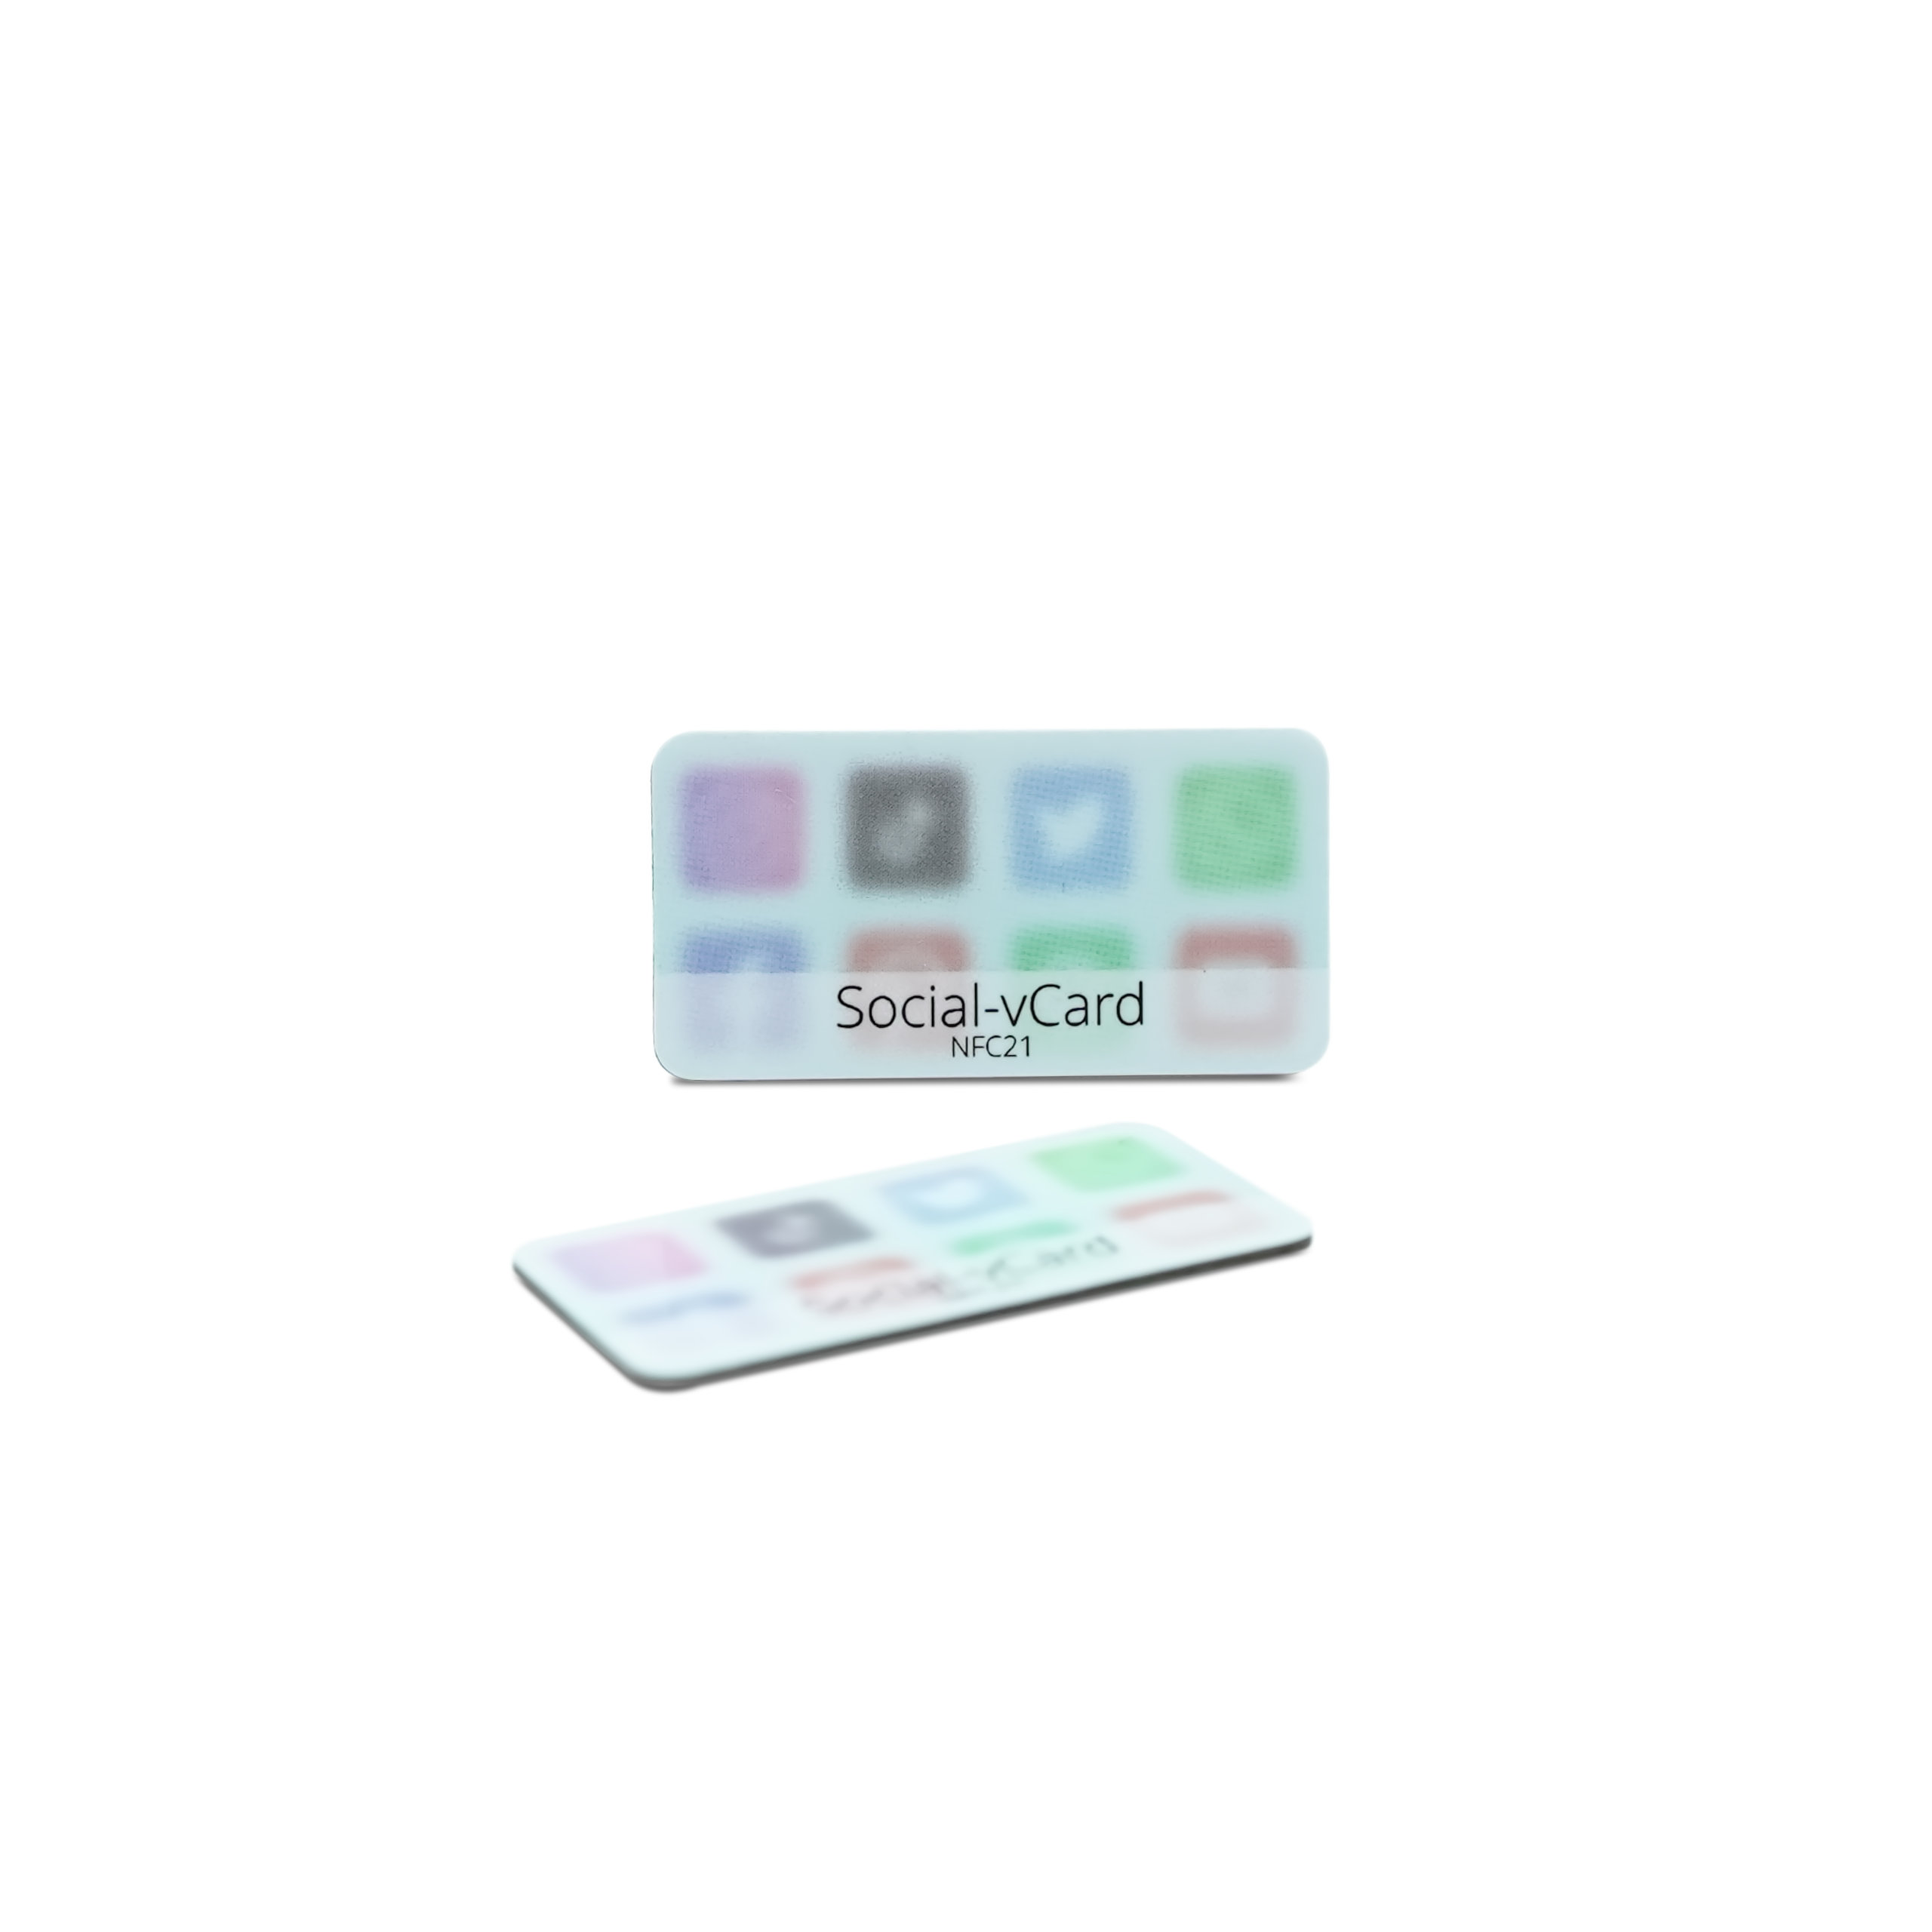 Social-vCard Light - Digital social media sticker - PET - 35 x 18 mm - light blue